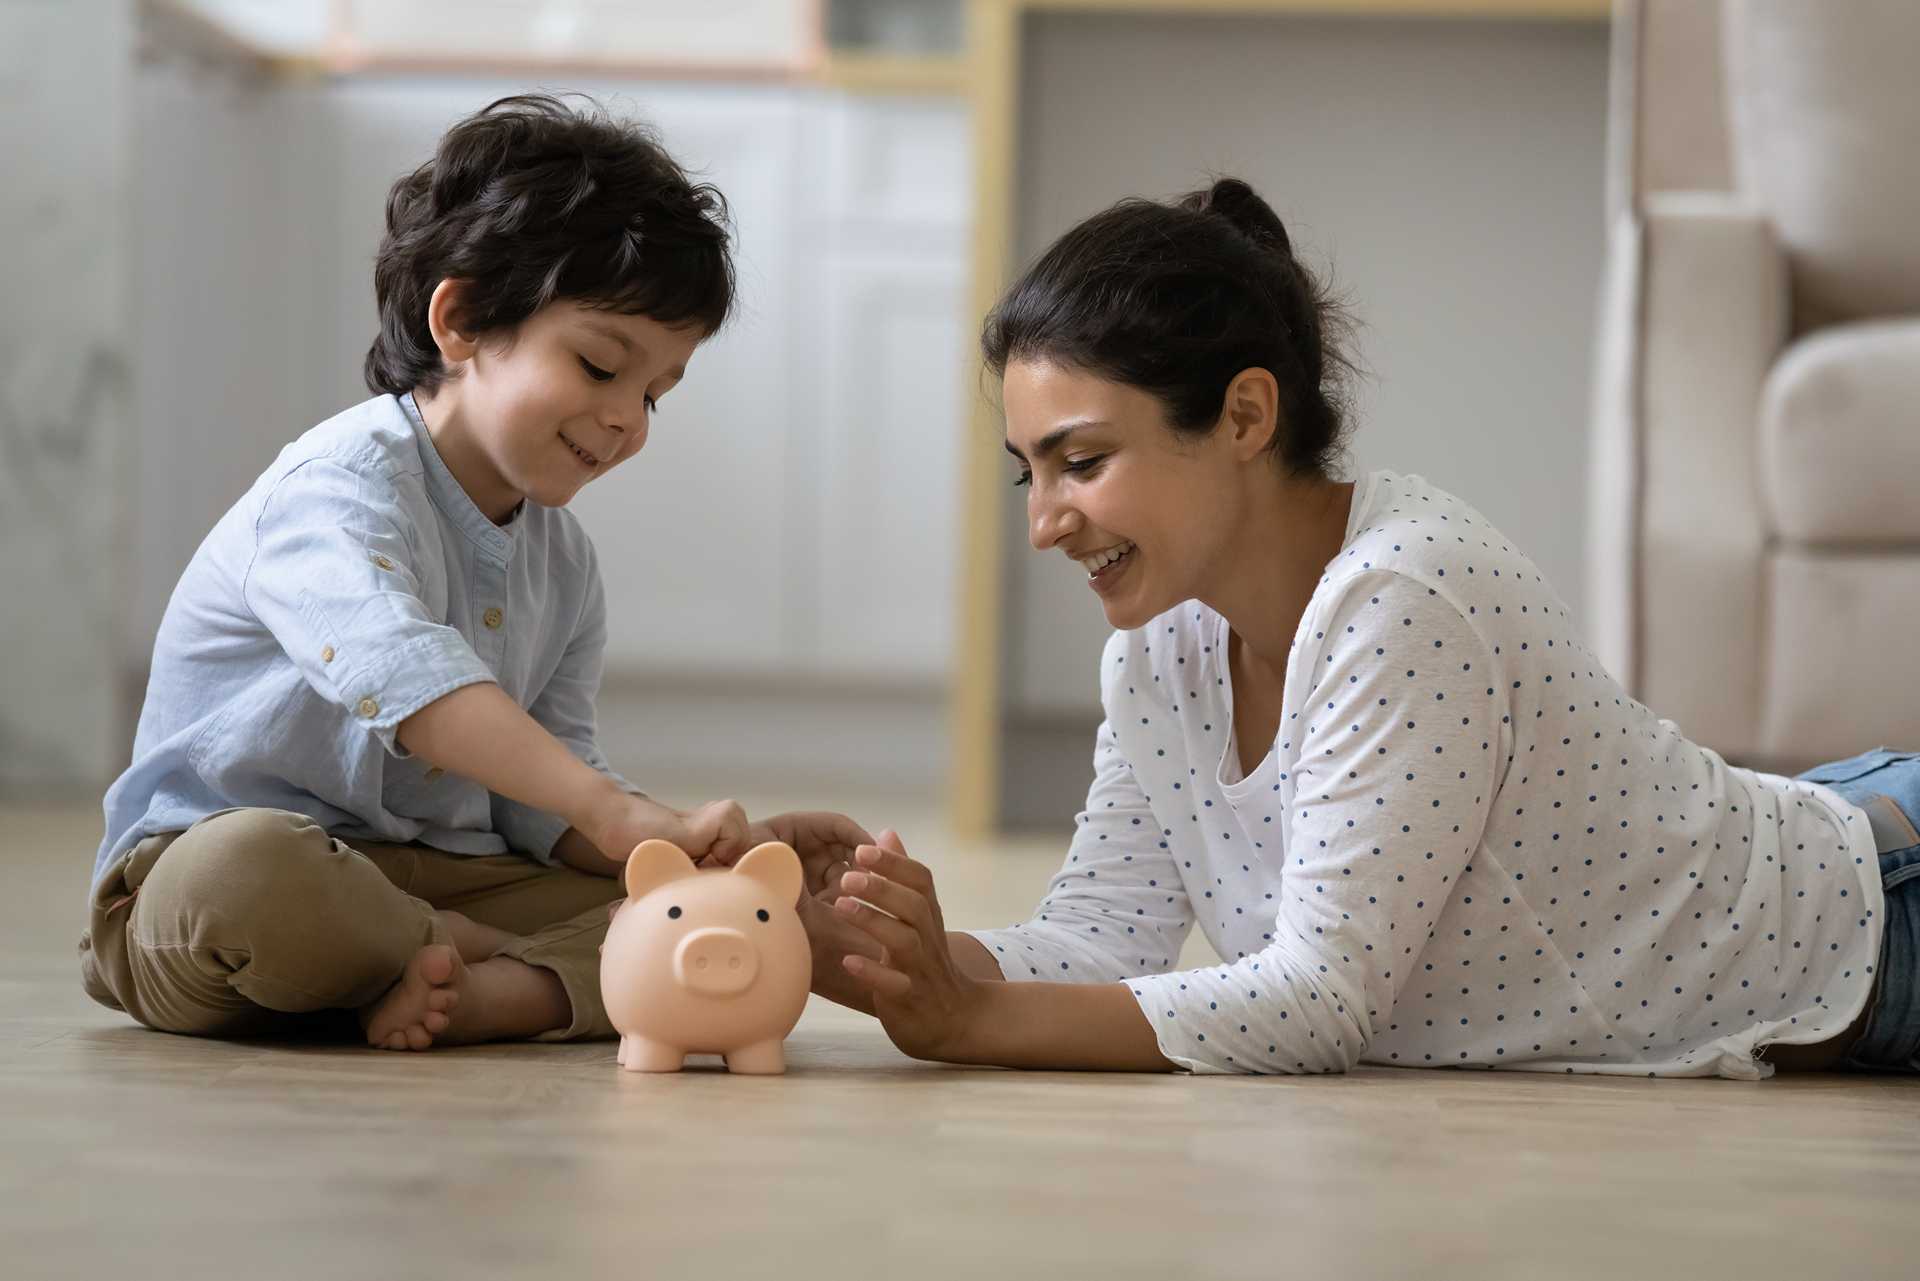 Start Your Kids' Savings Now.
Minor Savings